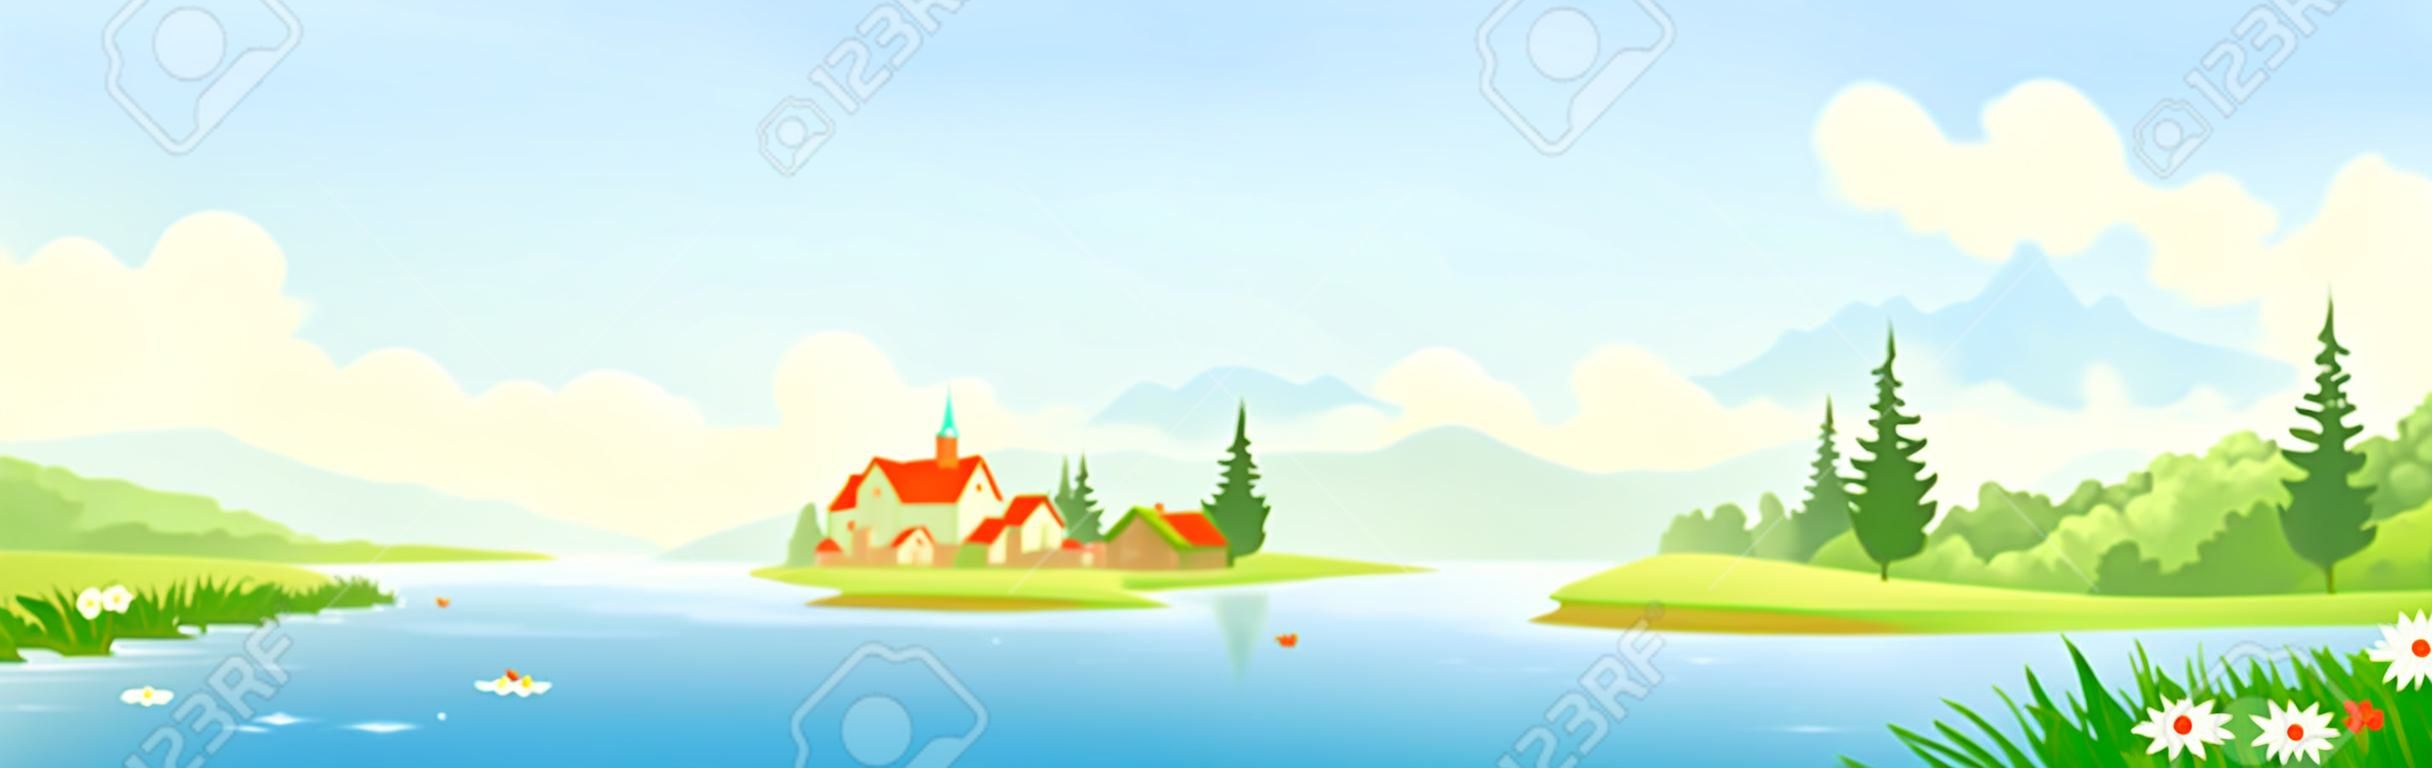 Vektor-Illustration von einem schönen Fluss-Panorama-Landschaft